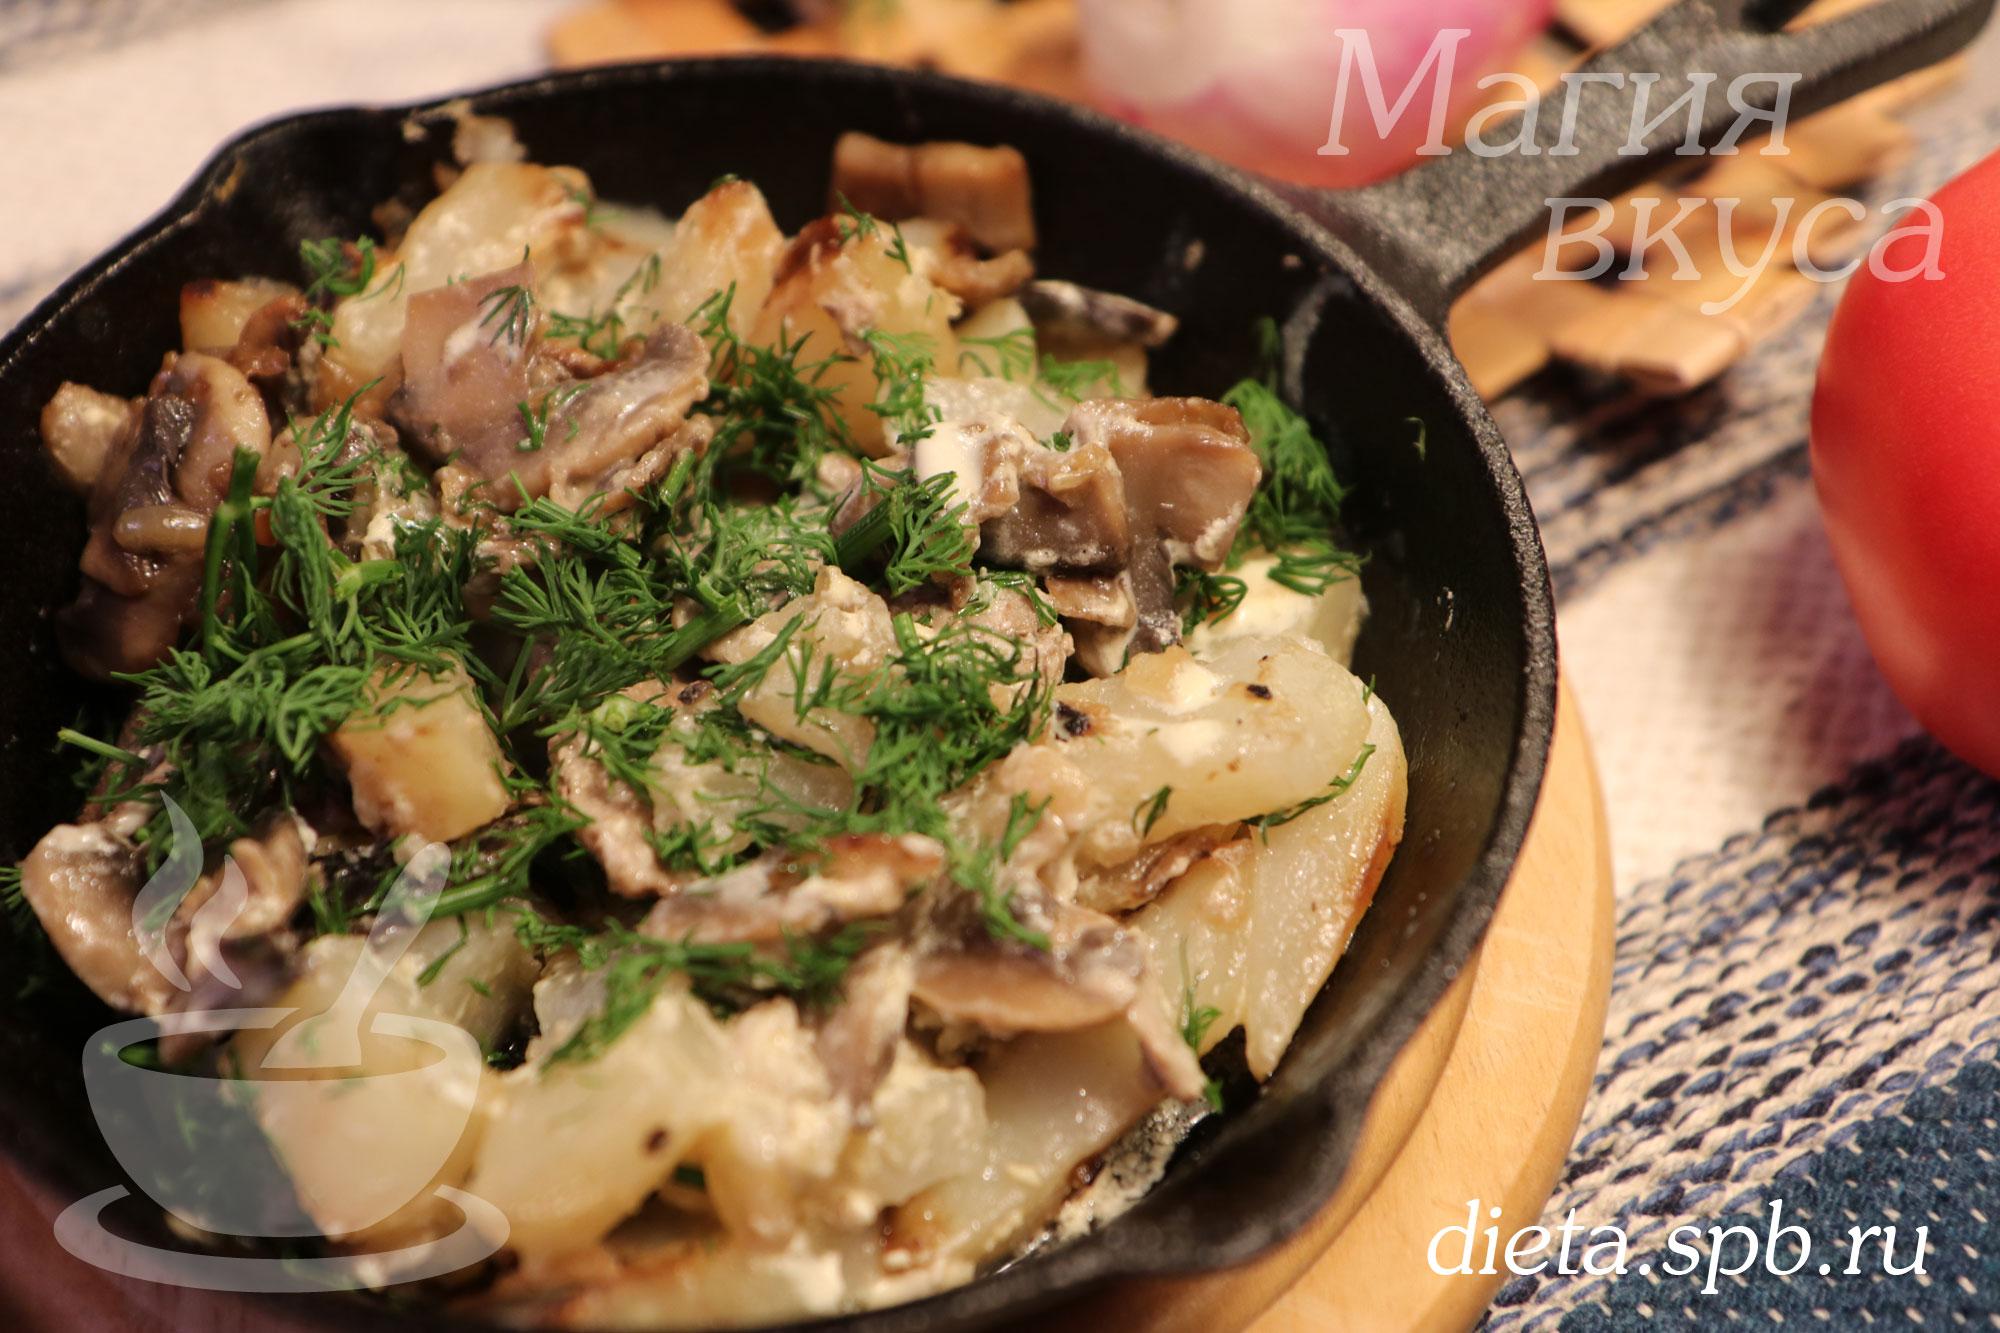 Скоблянка русская — картошка с мясом и грибами